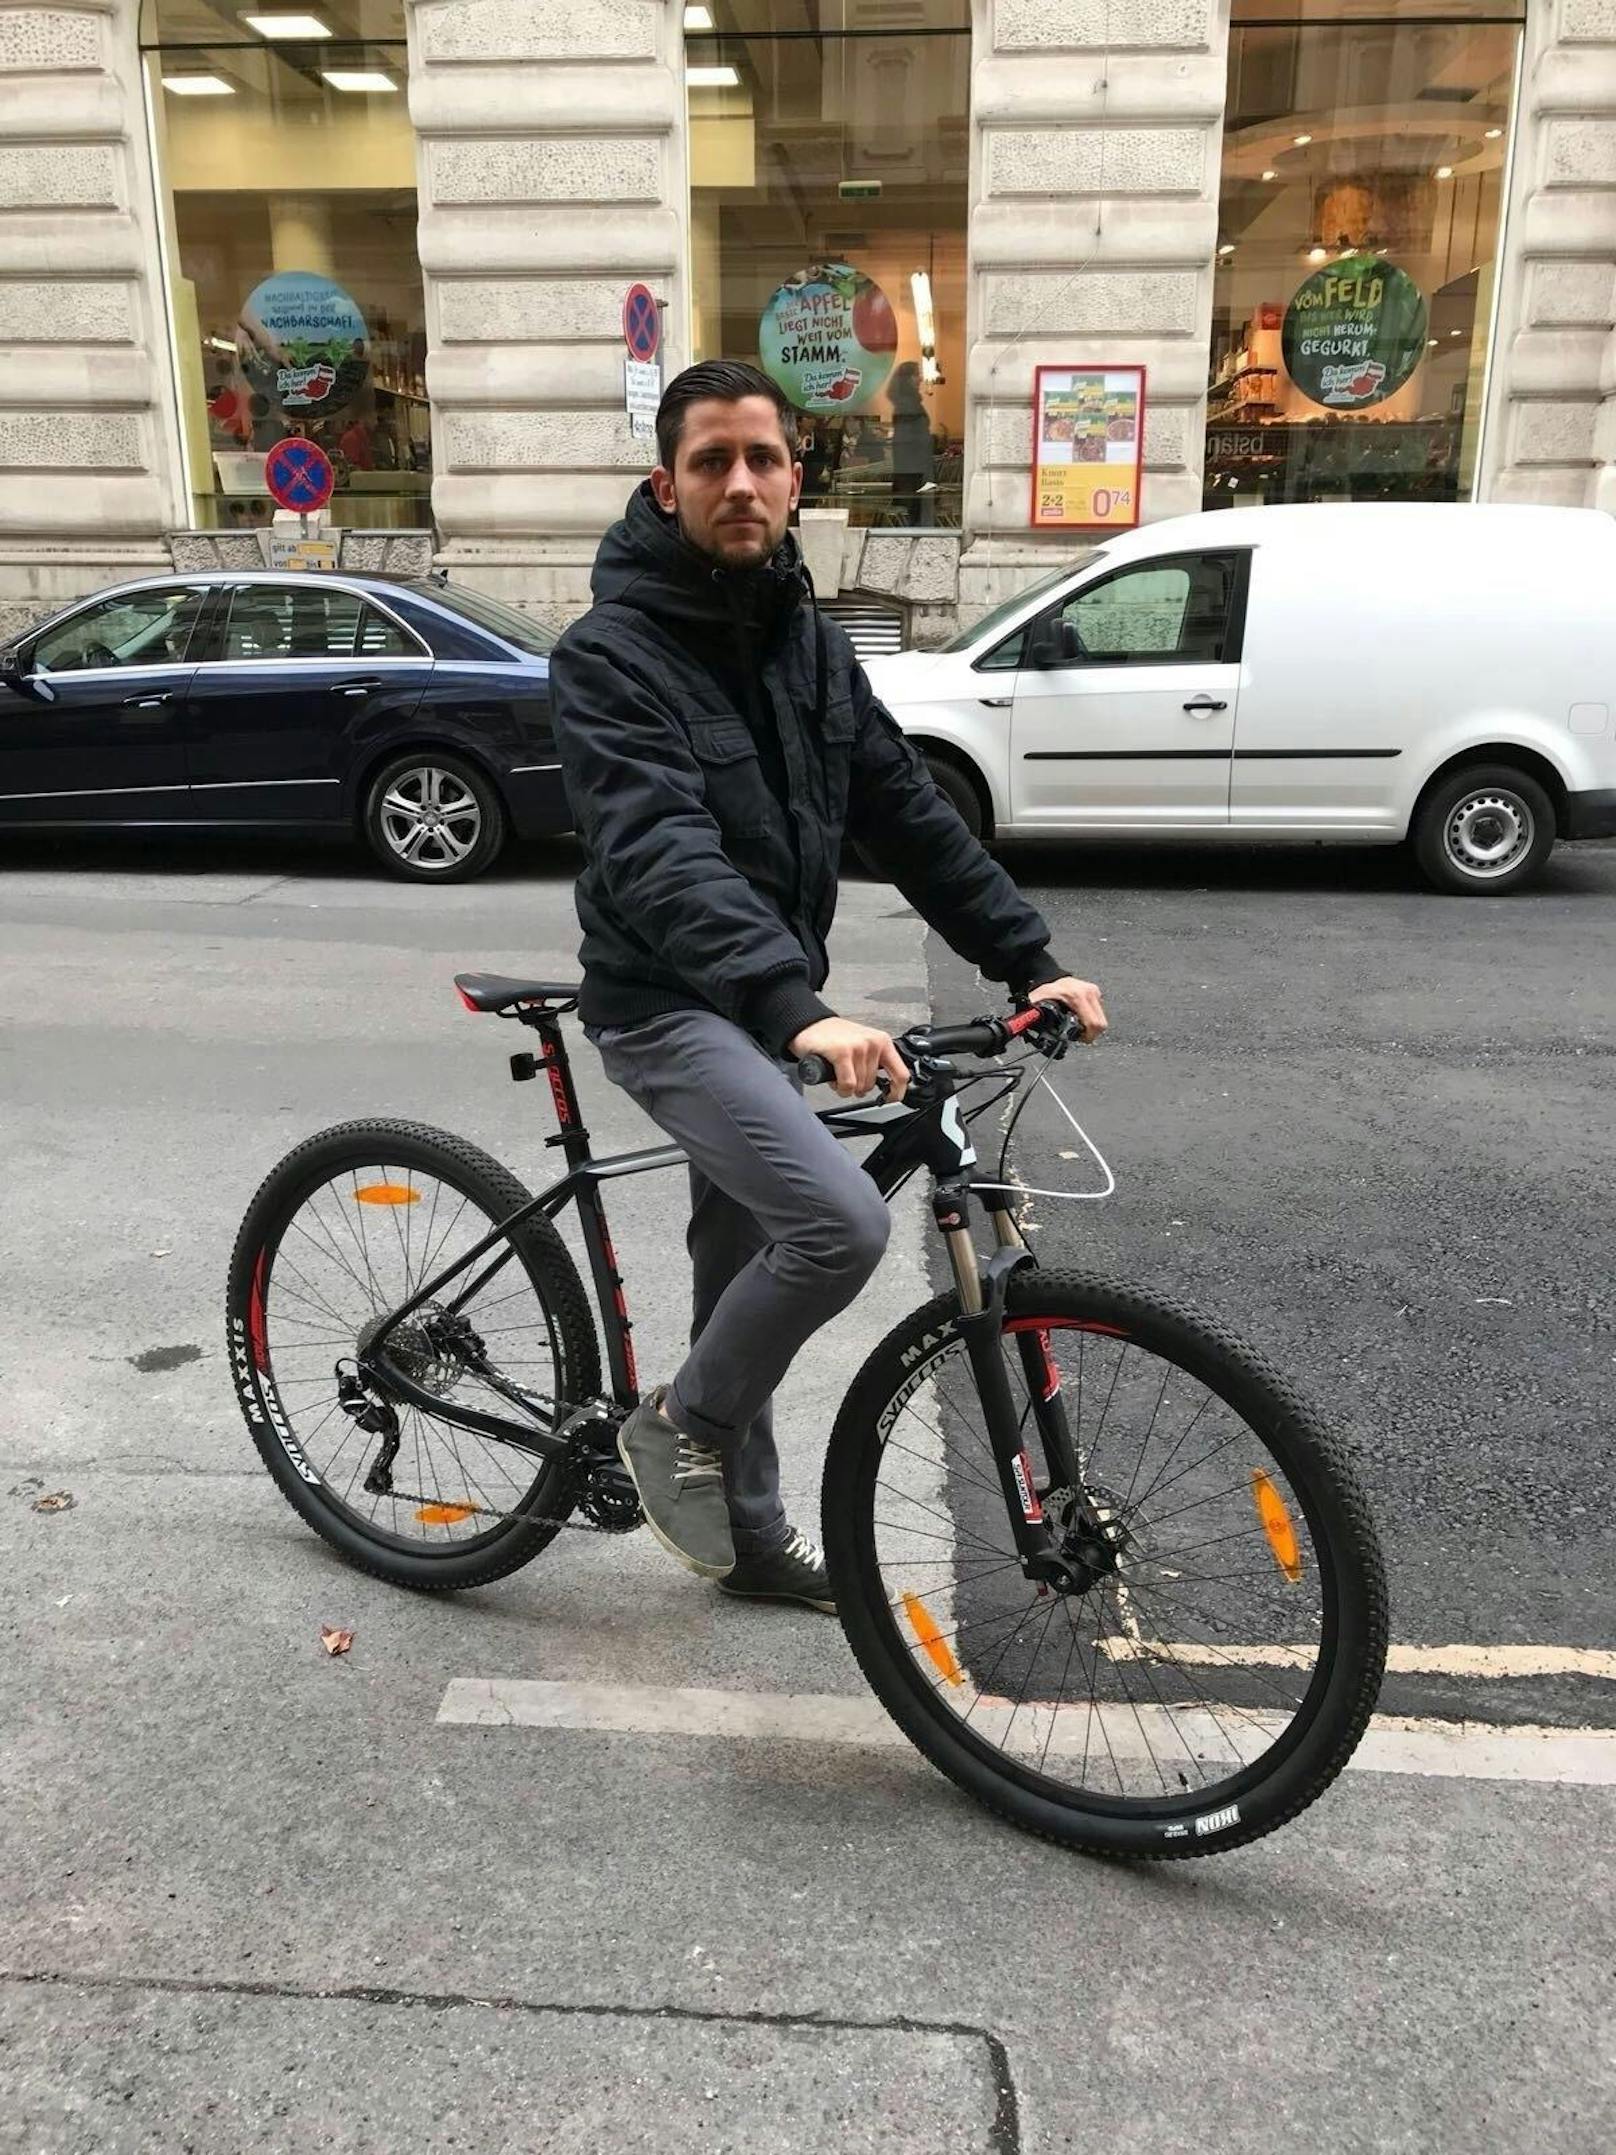 Weil der 26-jährige Manuel seine Hände beim Fahrradfahren in der Jackentasche hatte, soll er nun 90 Euro Strafe bezahlen.